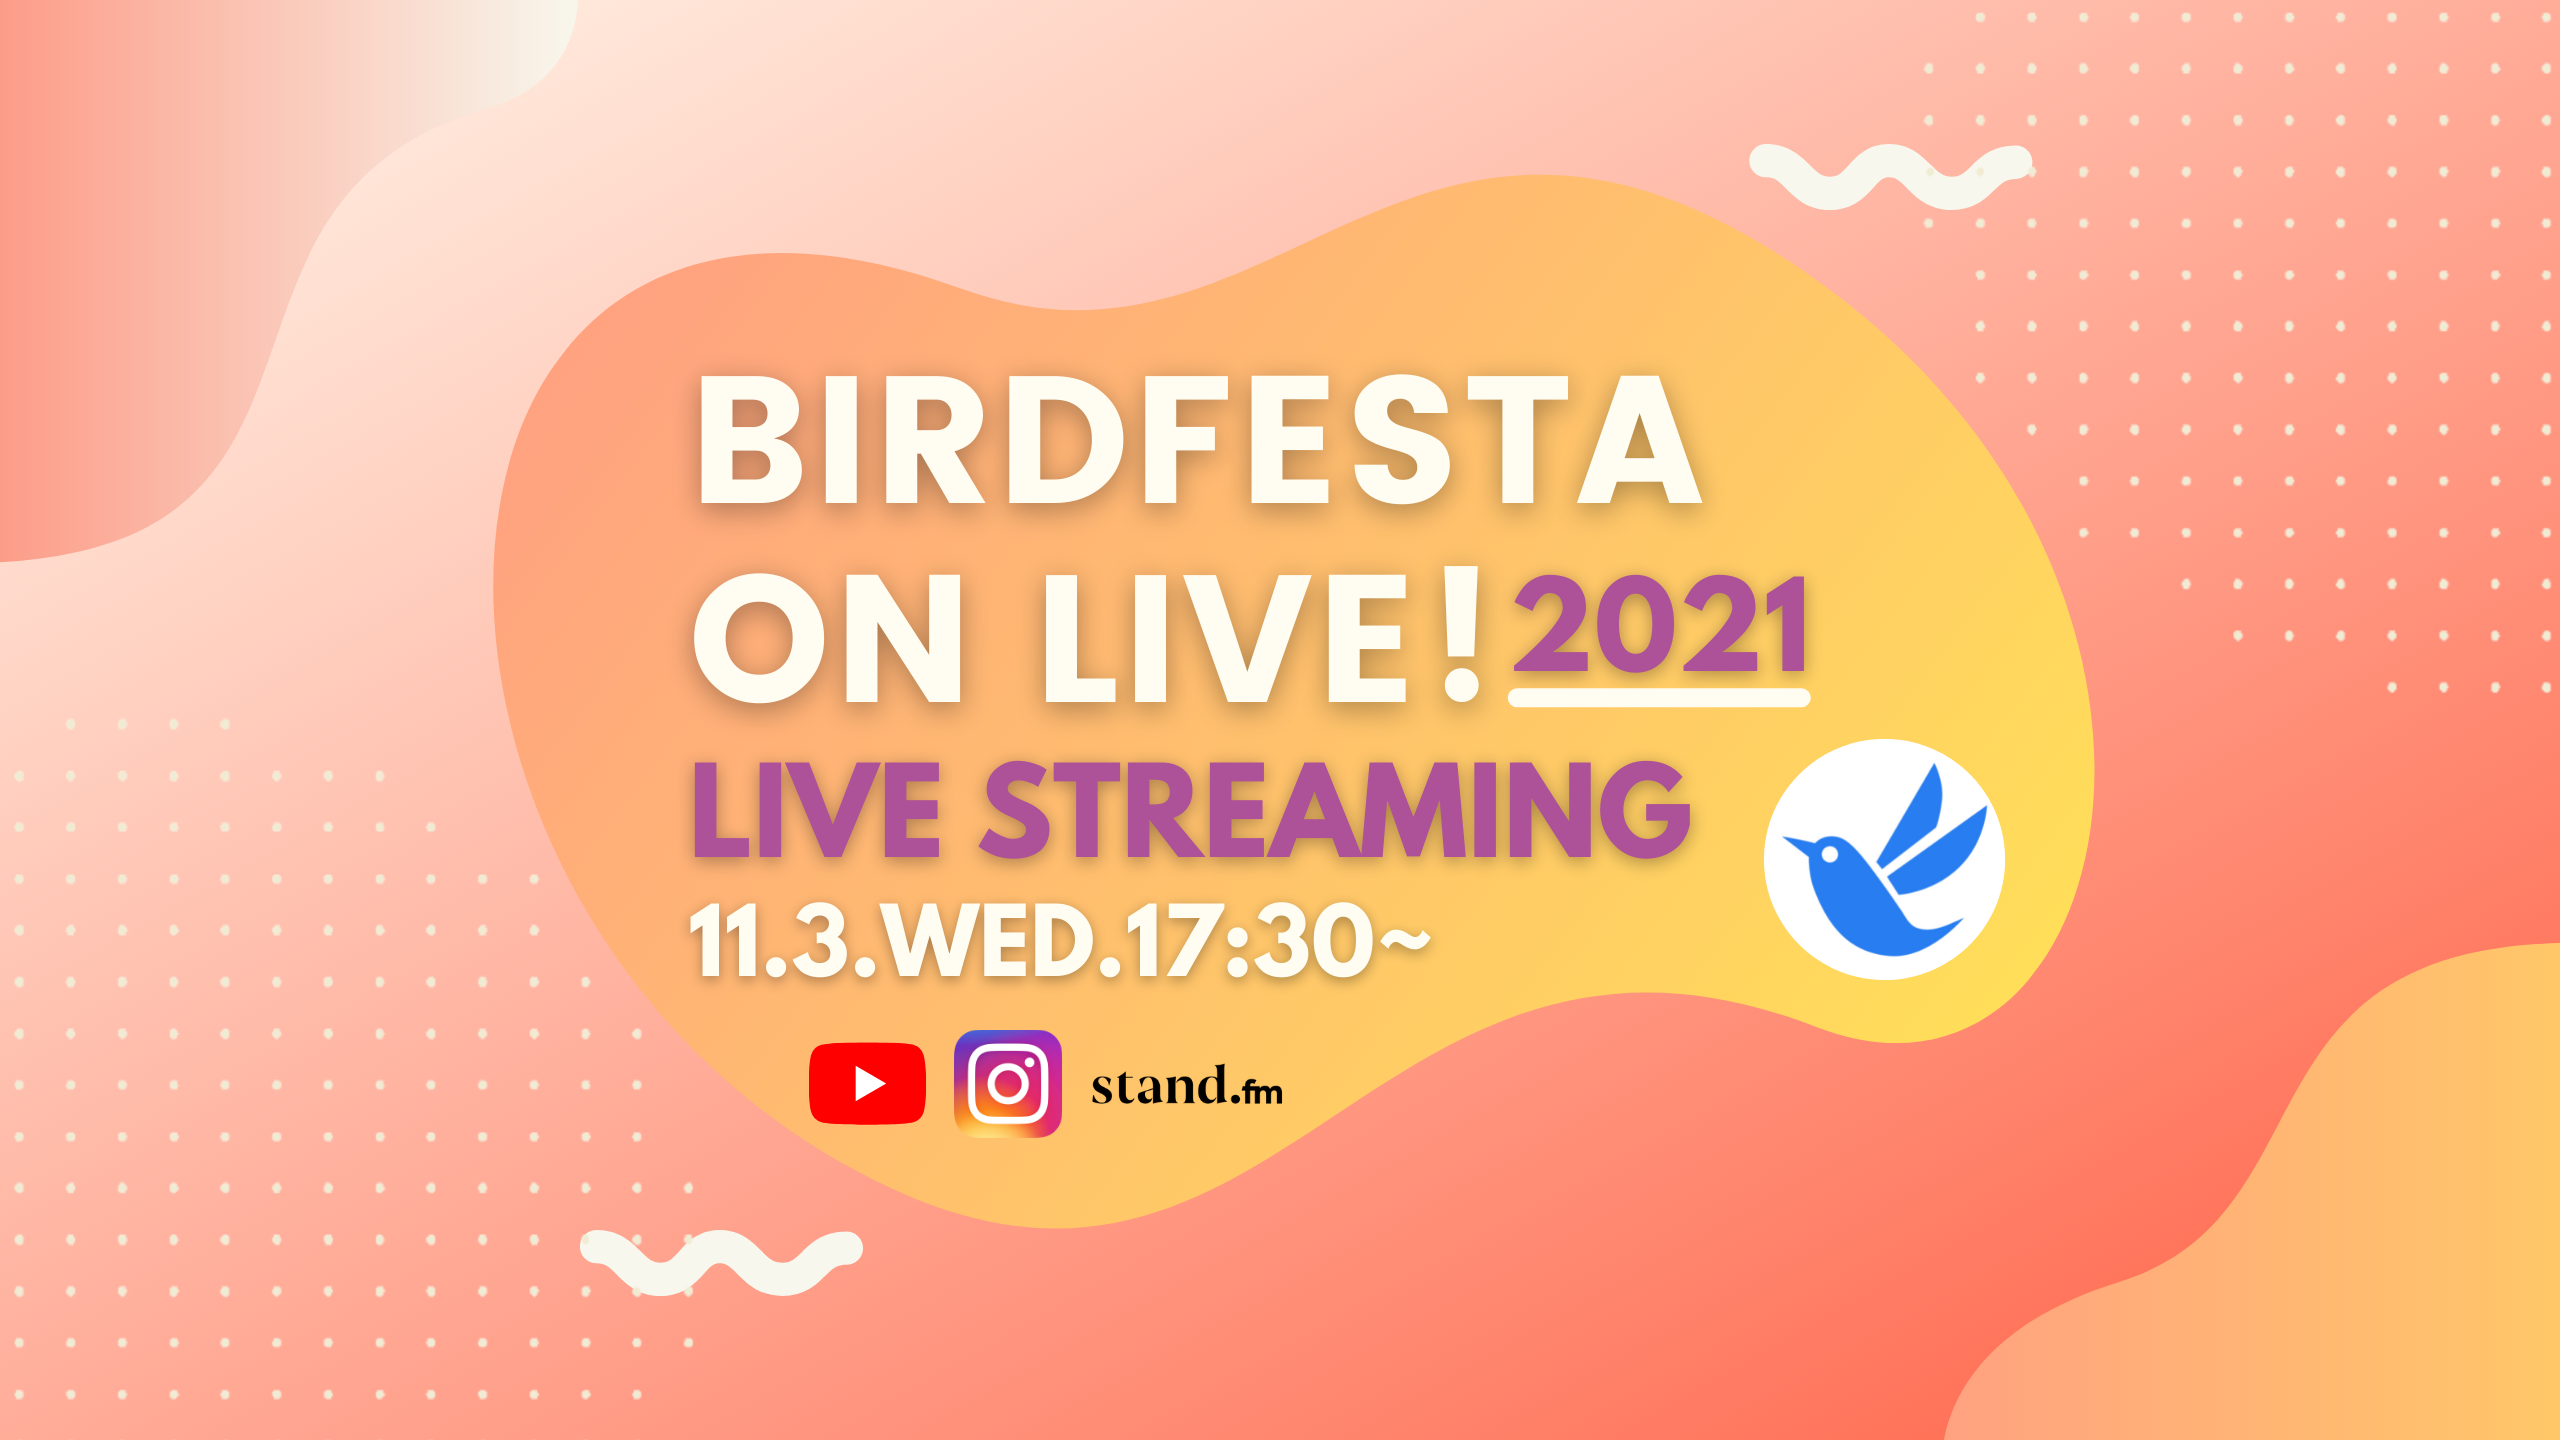 【応募はこちら】「BIRDFESTA 2021 ON LIVE!」スタンプラリーキャンペーン